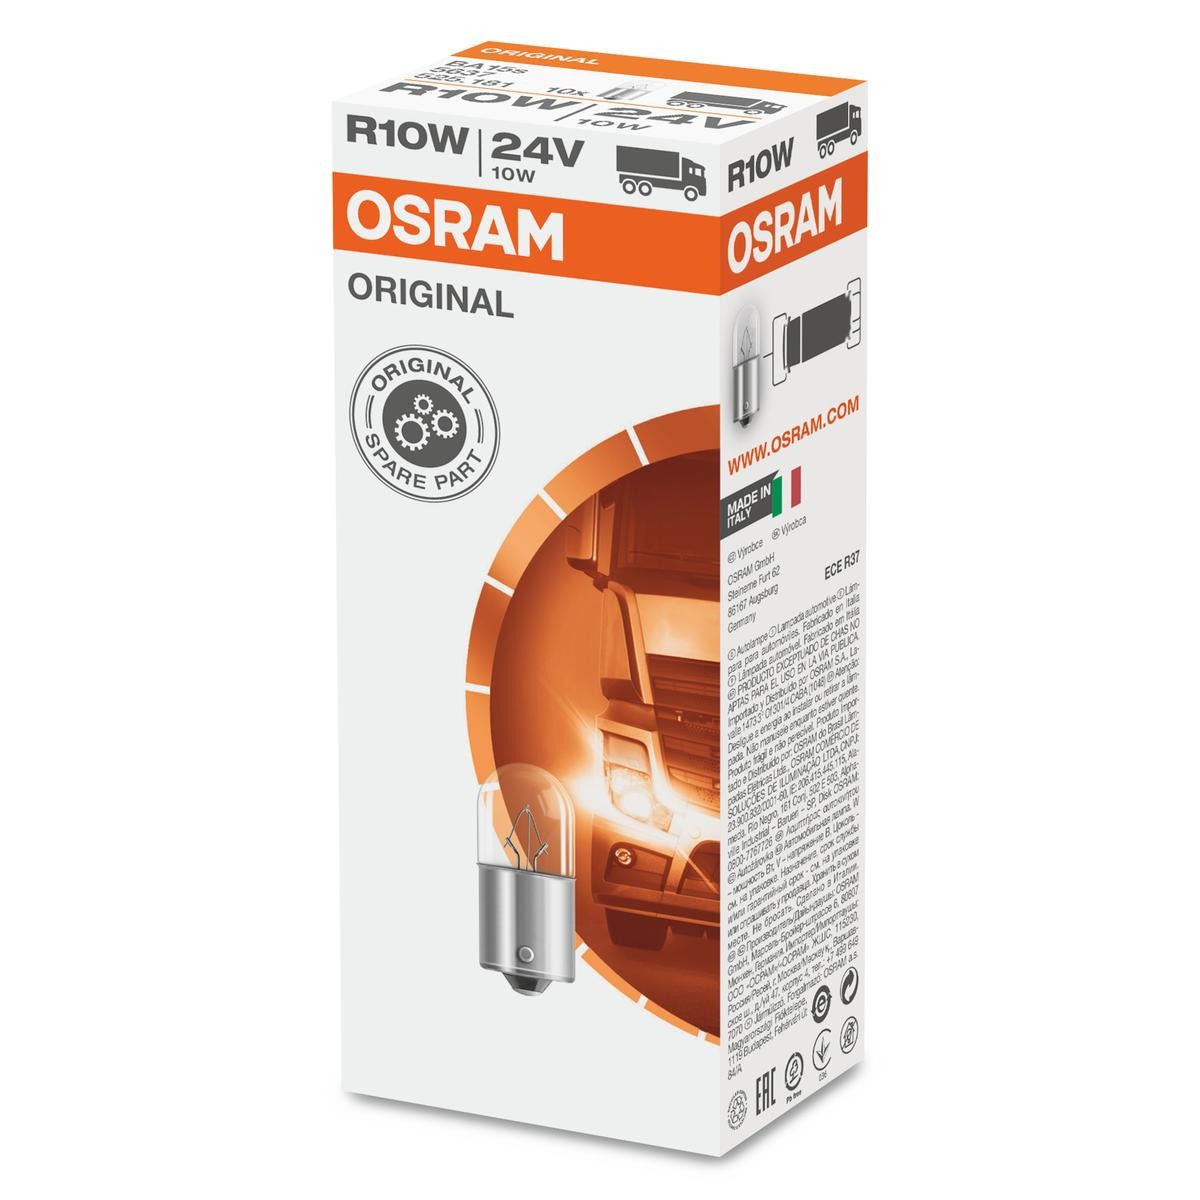 Number plate light bulb OSRAM ORIGINAL LINE 24V 10W, R10W, BA15s - 5637